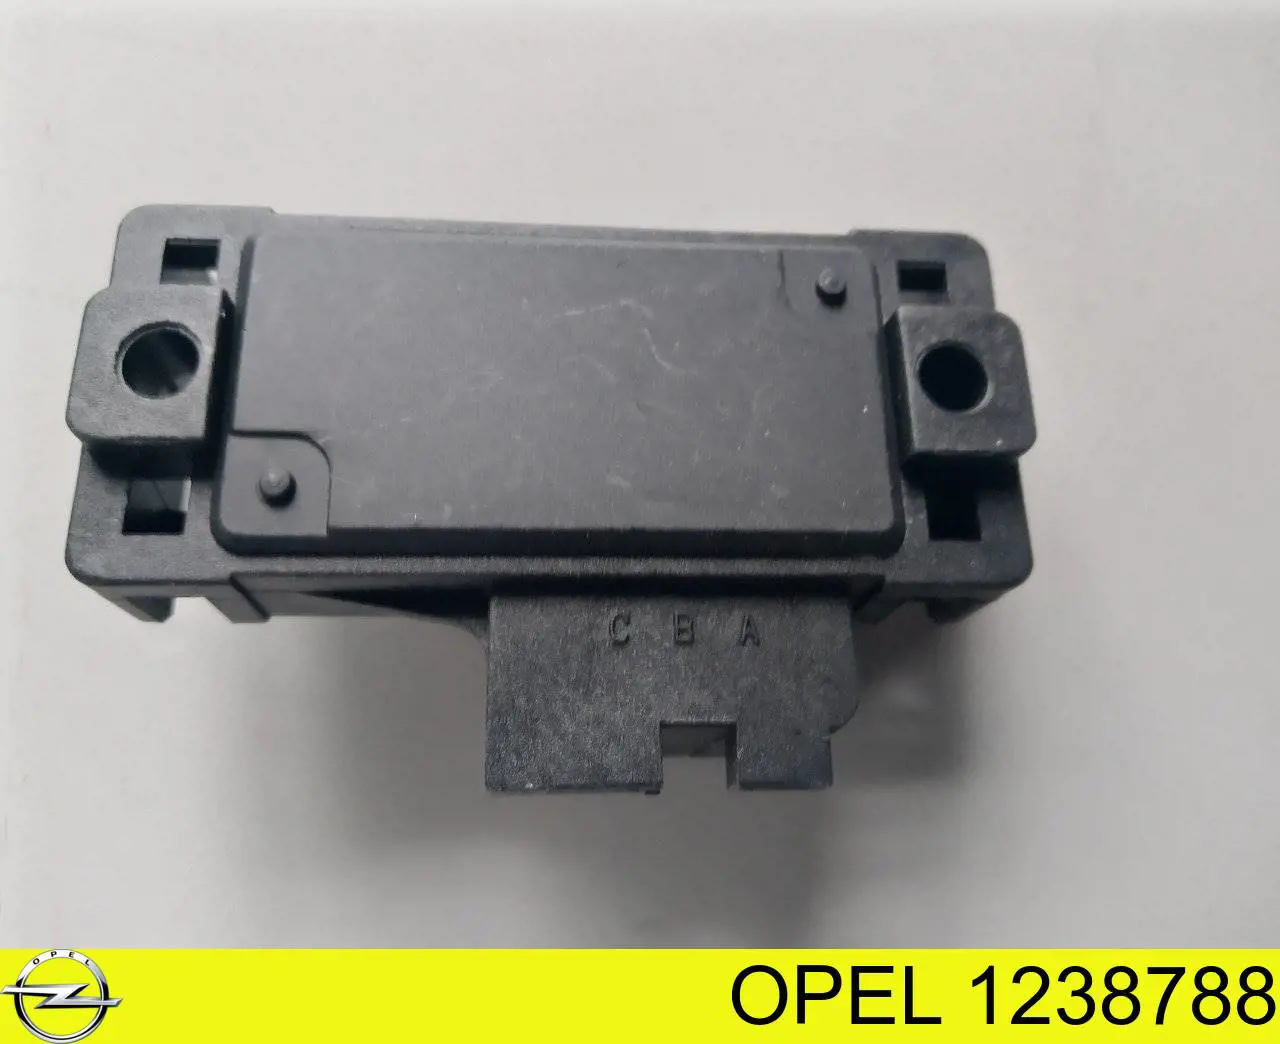 1238788 Opel датчик давления во впускном коллекторе, map